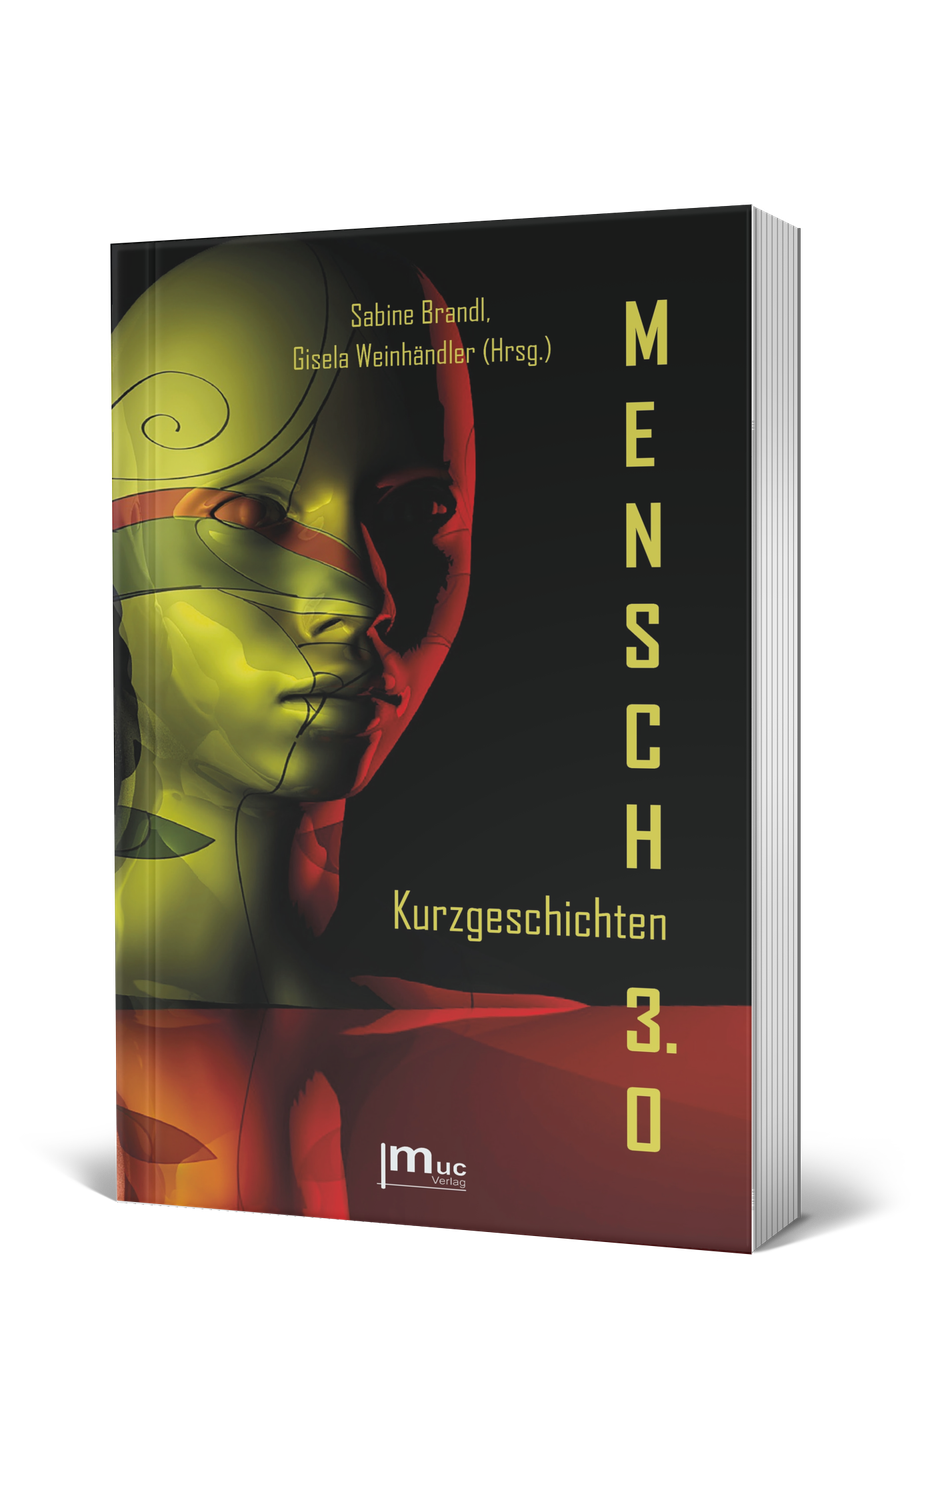 Buchvorstellung: Die Herausgeberinnen Sabine Brandl und Gisela Weinhändler stellten ihre neue Anthologie vor